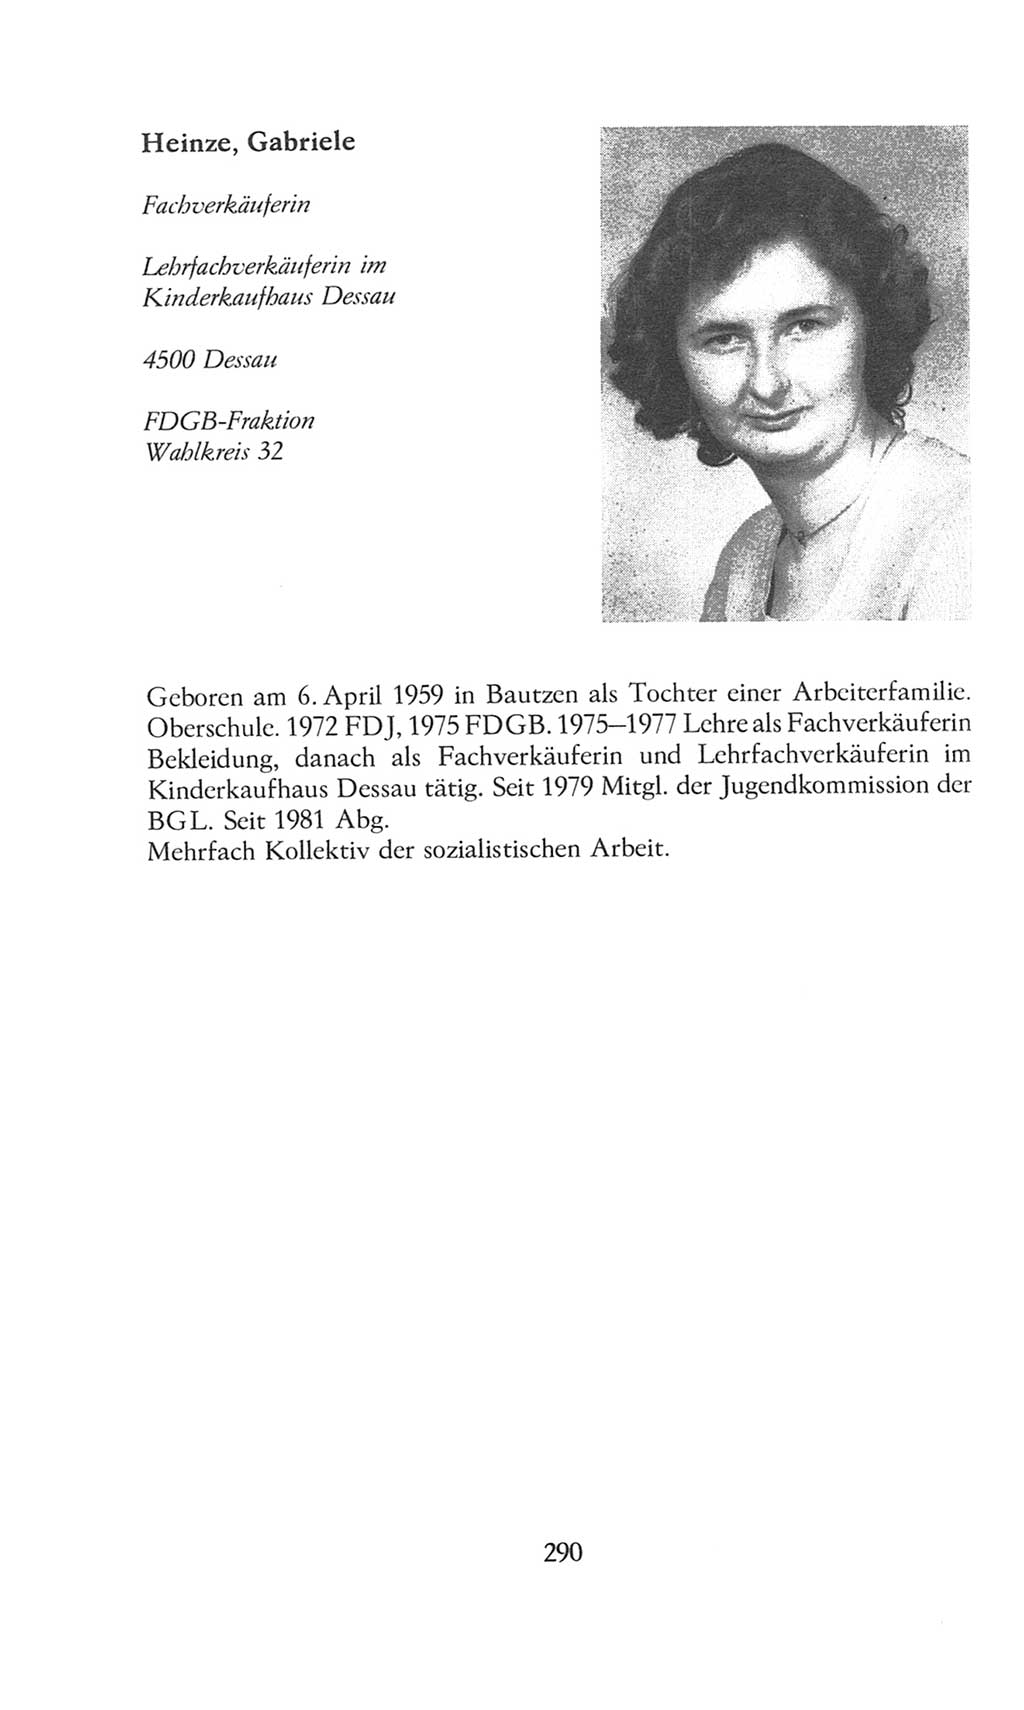 Volkskammer (VK) der Deutschen Demokratischen Republik (DDR), 8. Wahlperiode 1981-1986, Seite 290 (VK. DDR 8. WP. 1981-1986, S. 290)